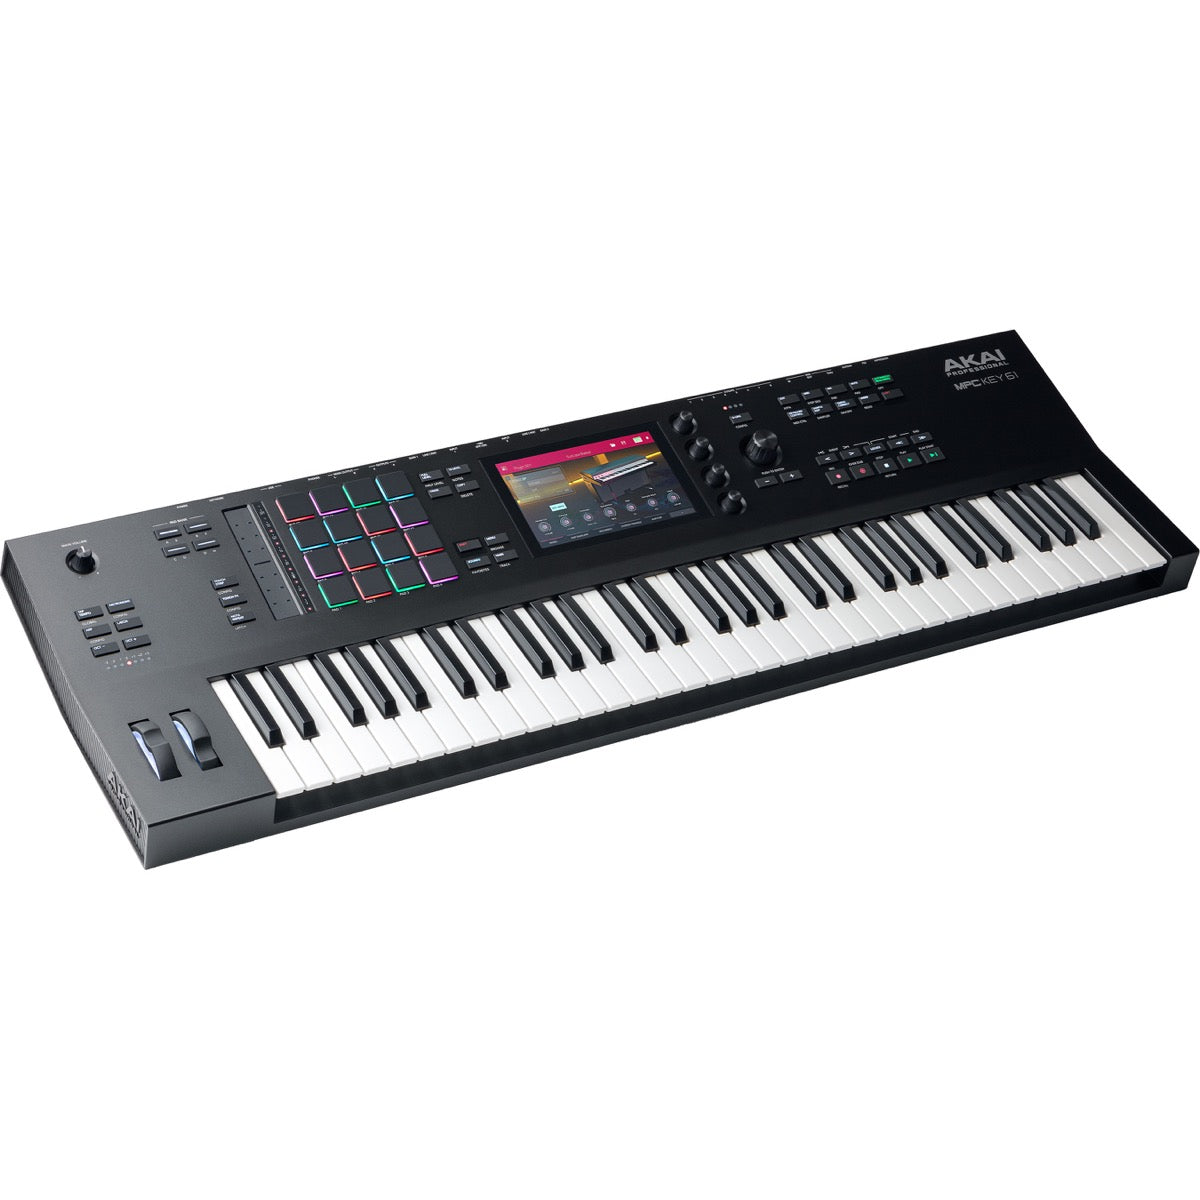 Akai Professional MPC Key 61 Production & Synthesizer Keyboard